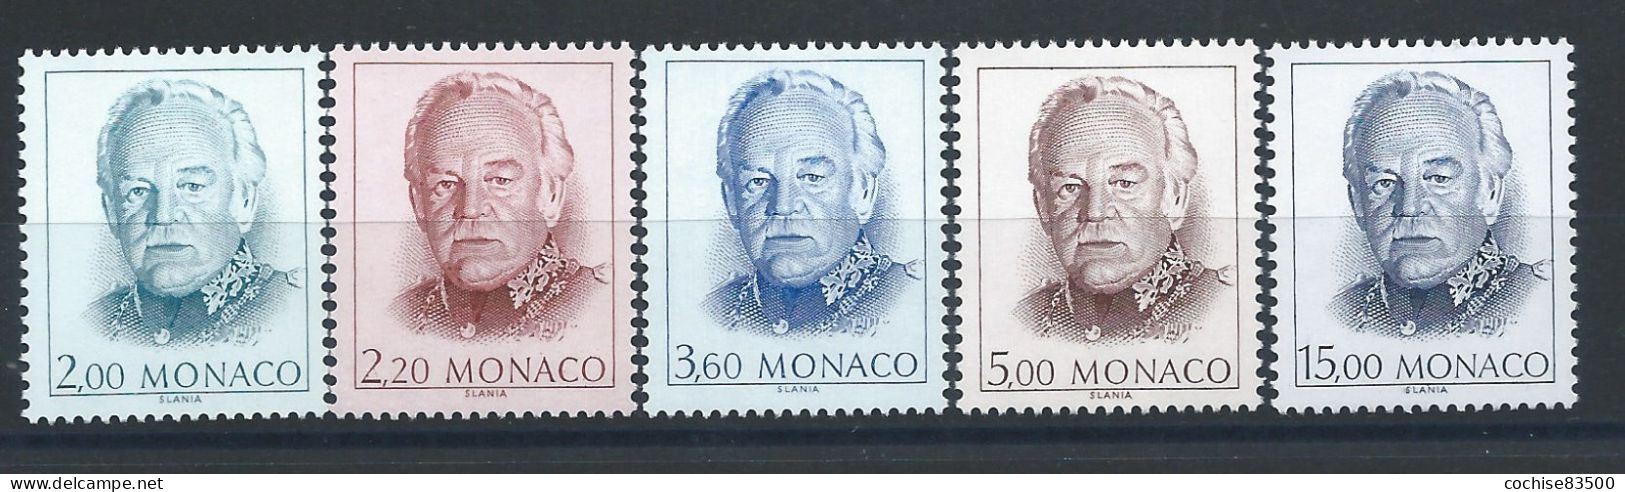 Monaco N°1671/75** (MNH) 1989 - Prince Rainier III - Ongebruikt